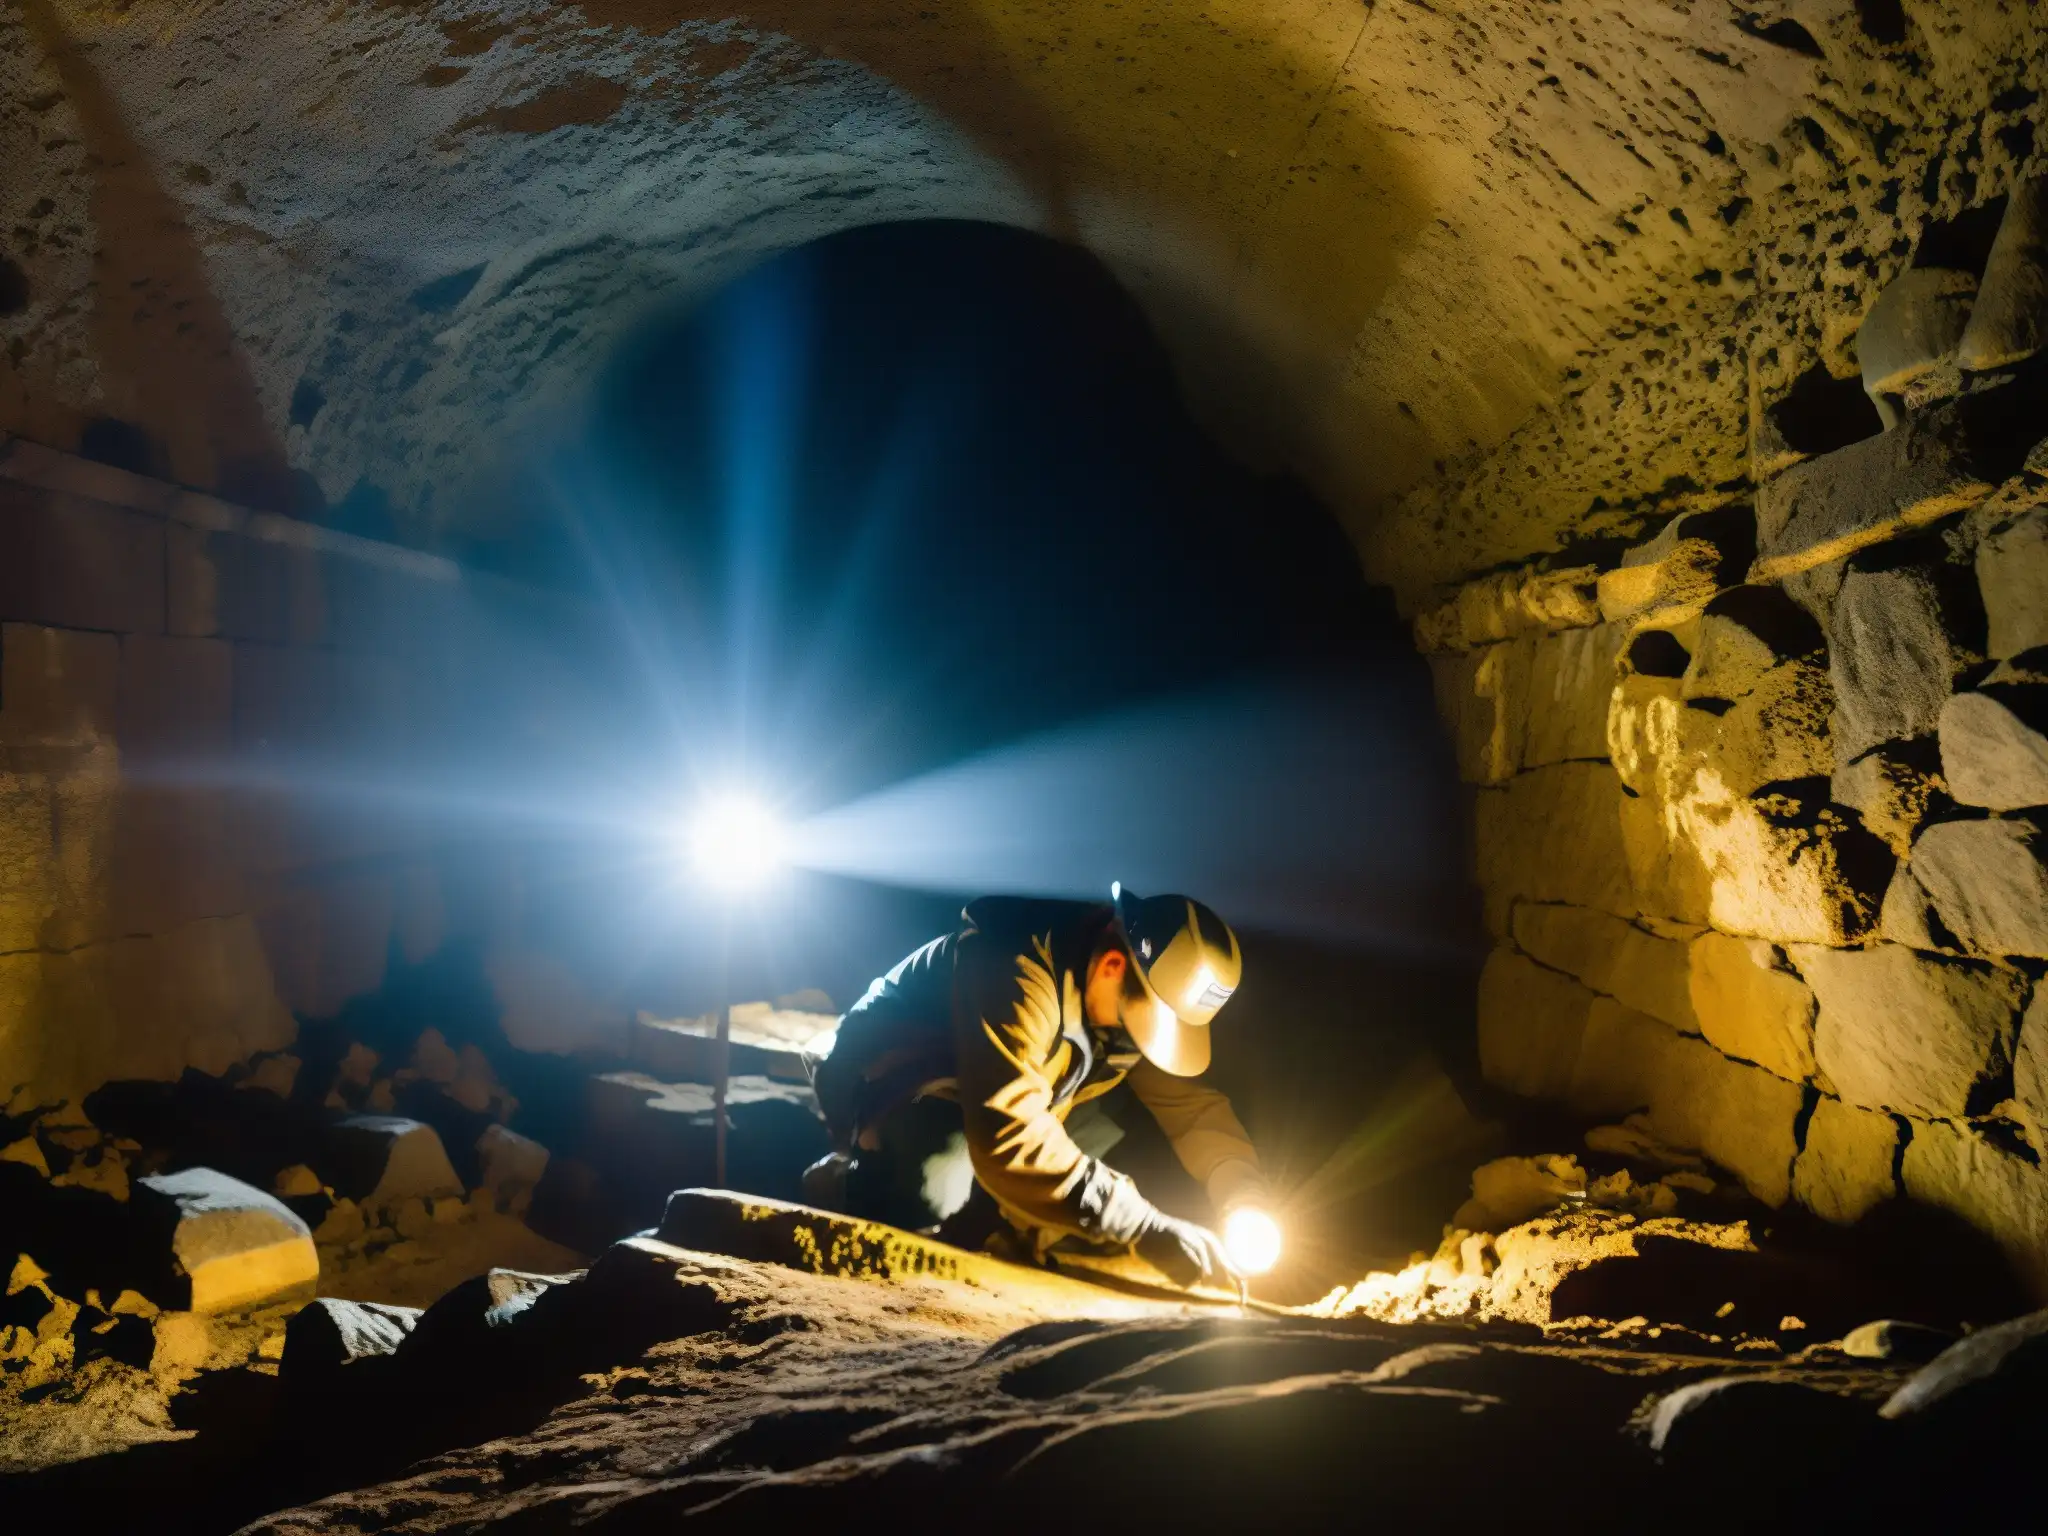 Un equipo de arqueólogos explorando túneles perdidos bajo la Universidad Dalhousie, descubriendo antiguos tesoros y revelando la enigmática historia